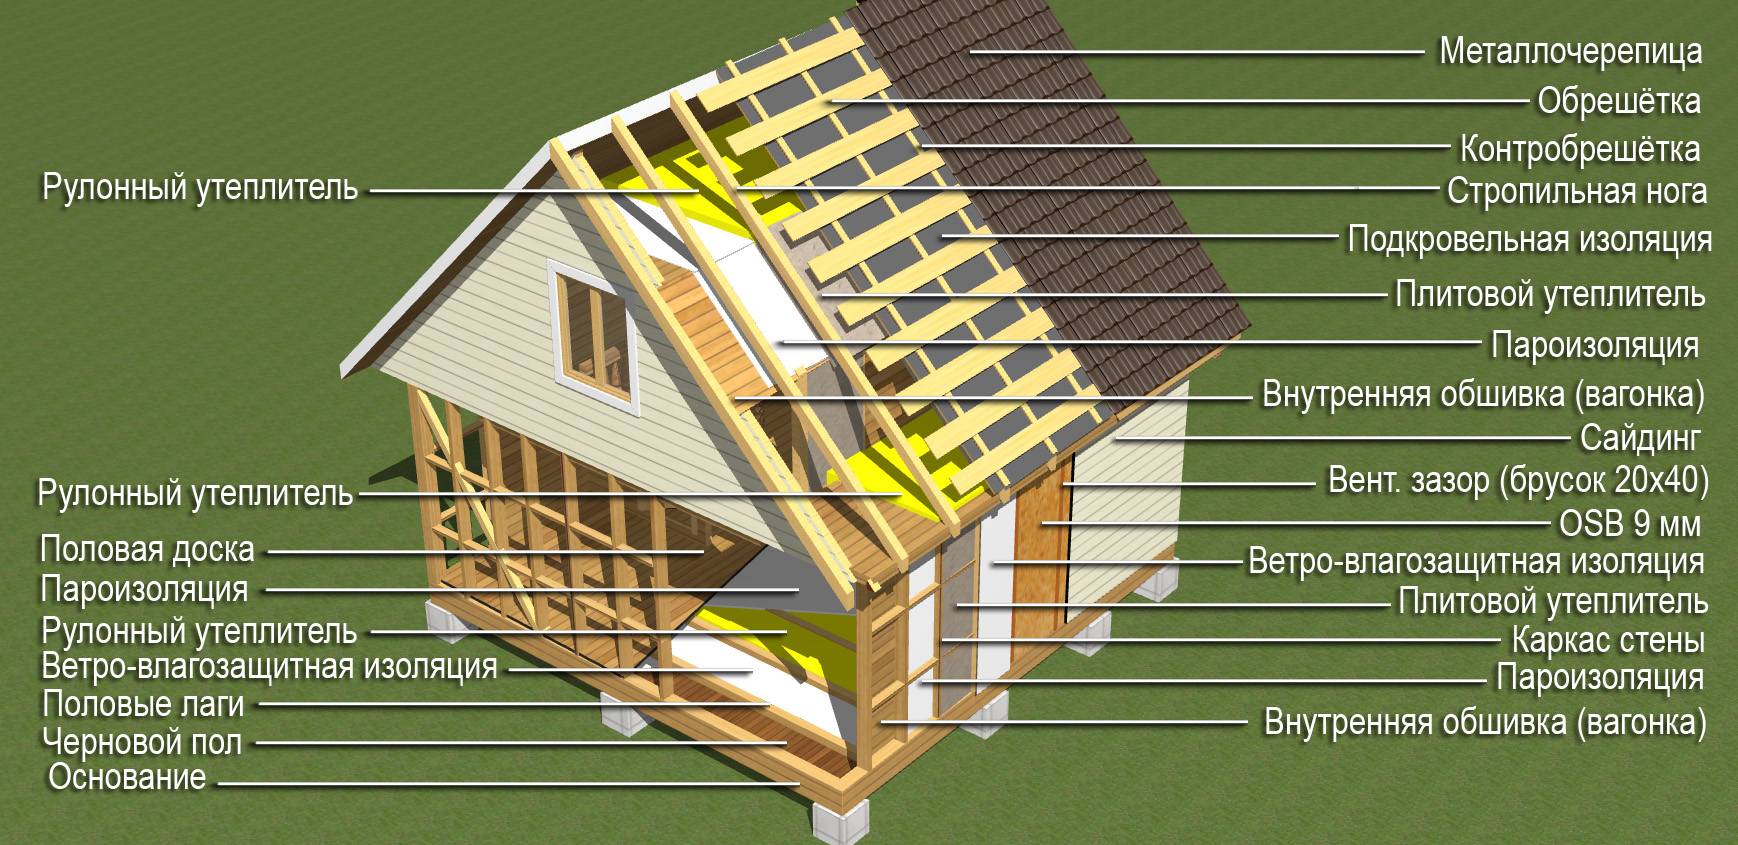 Поэтапная технология строительства каркасных домов